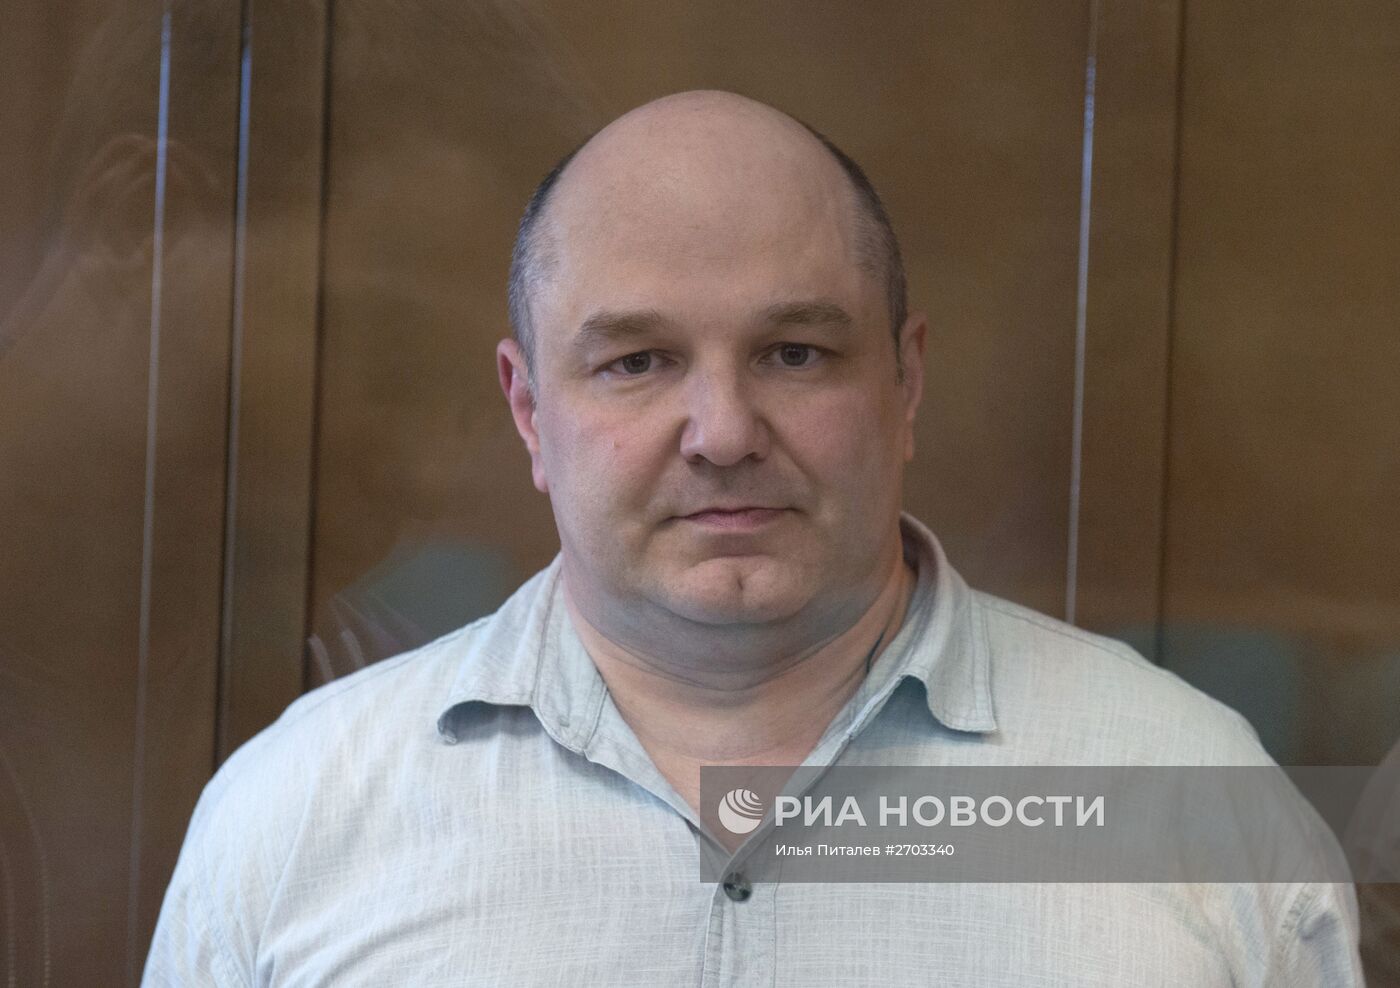 Оглашение приговора экс-сотруднику ГРУ Геннадию Кравцову